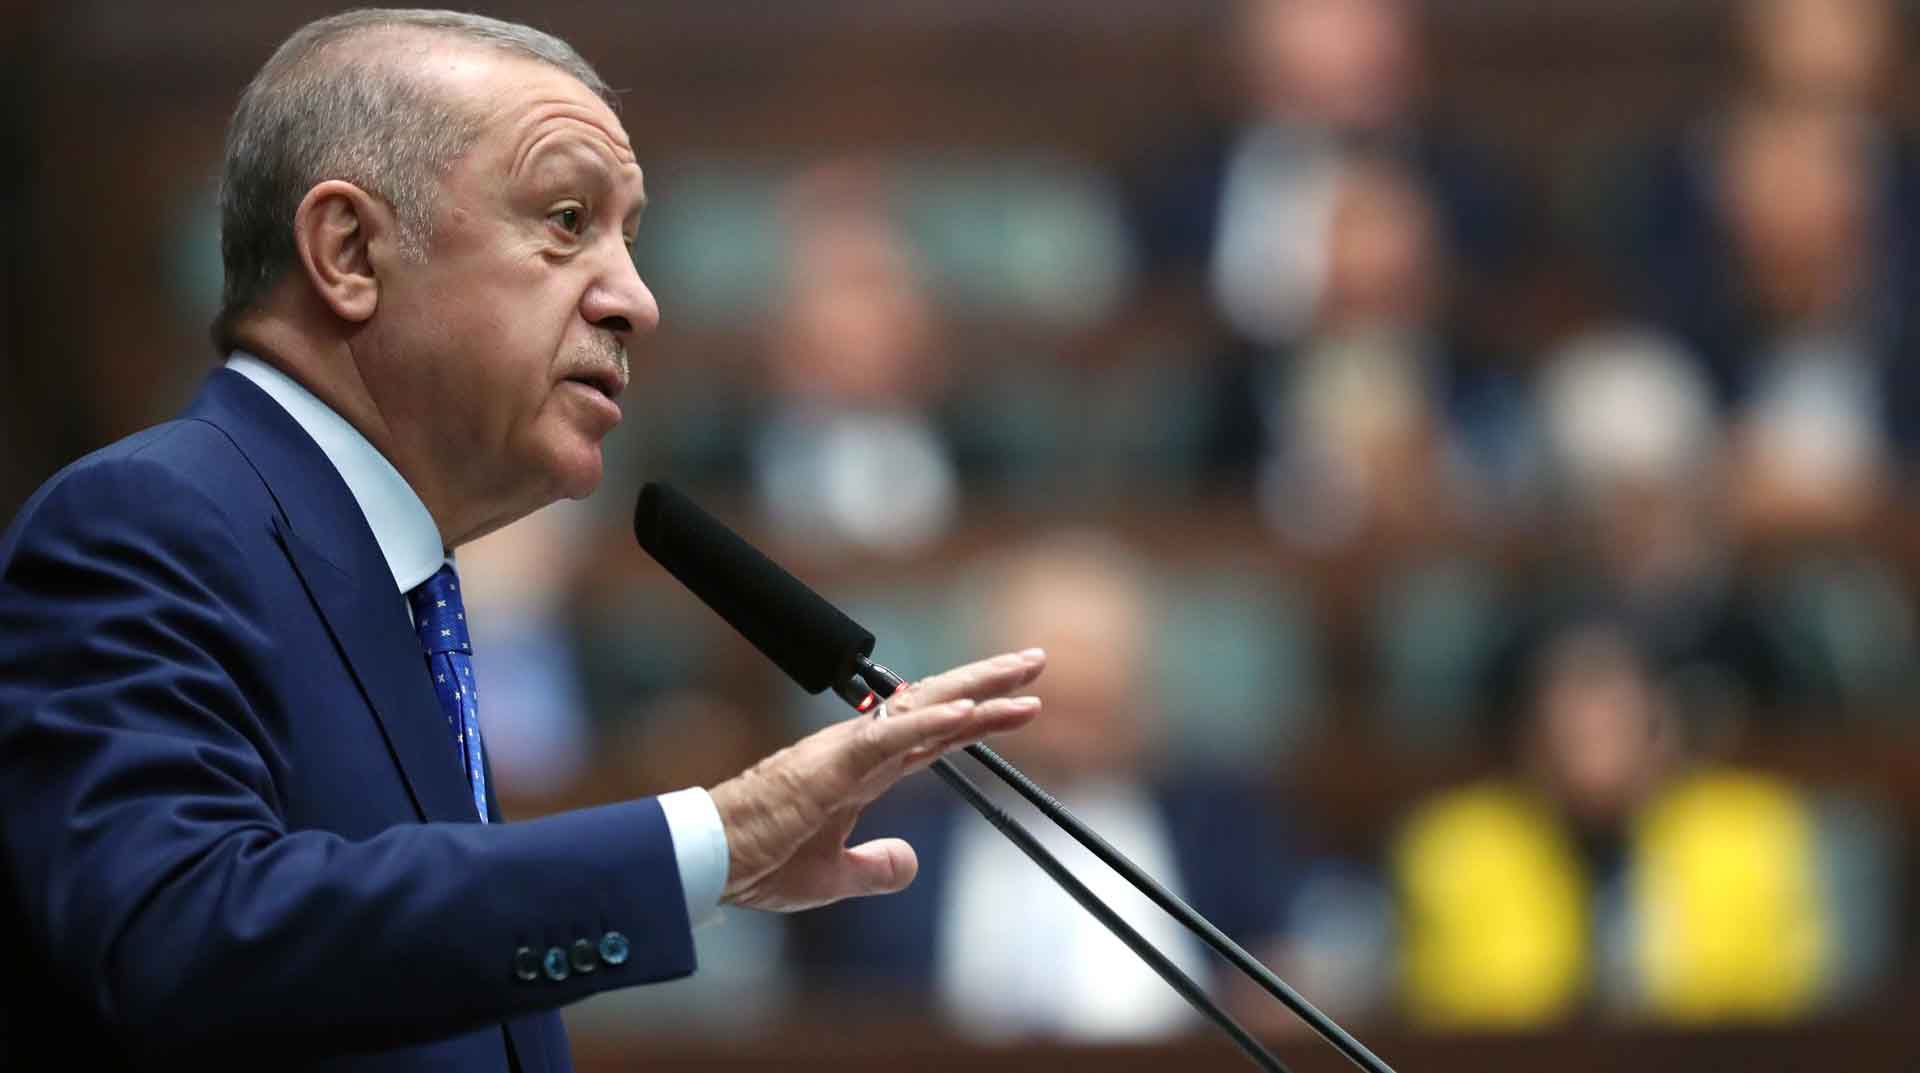 El presidente turco, Recep Tayyip Erdogan, en una intervención en la que justificó su negativa al ingreso de Suecia y Finlandia a la OTAN. Foto: EFE.